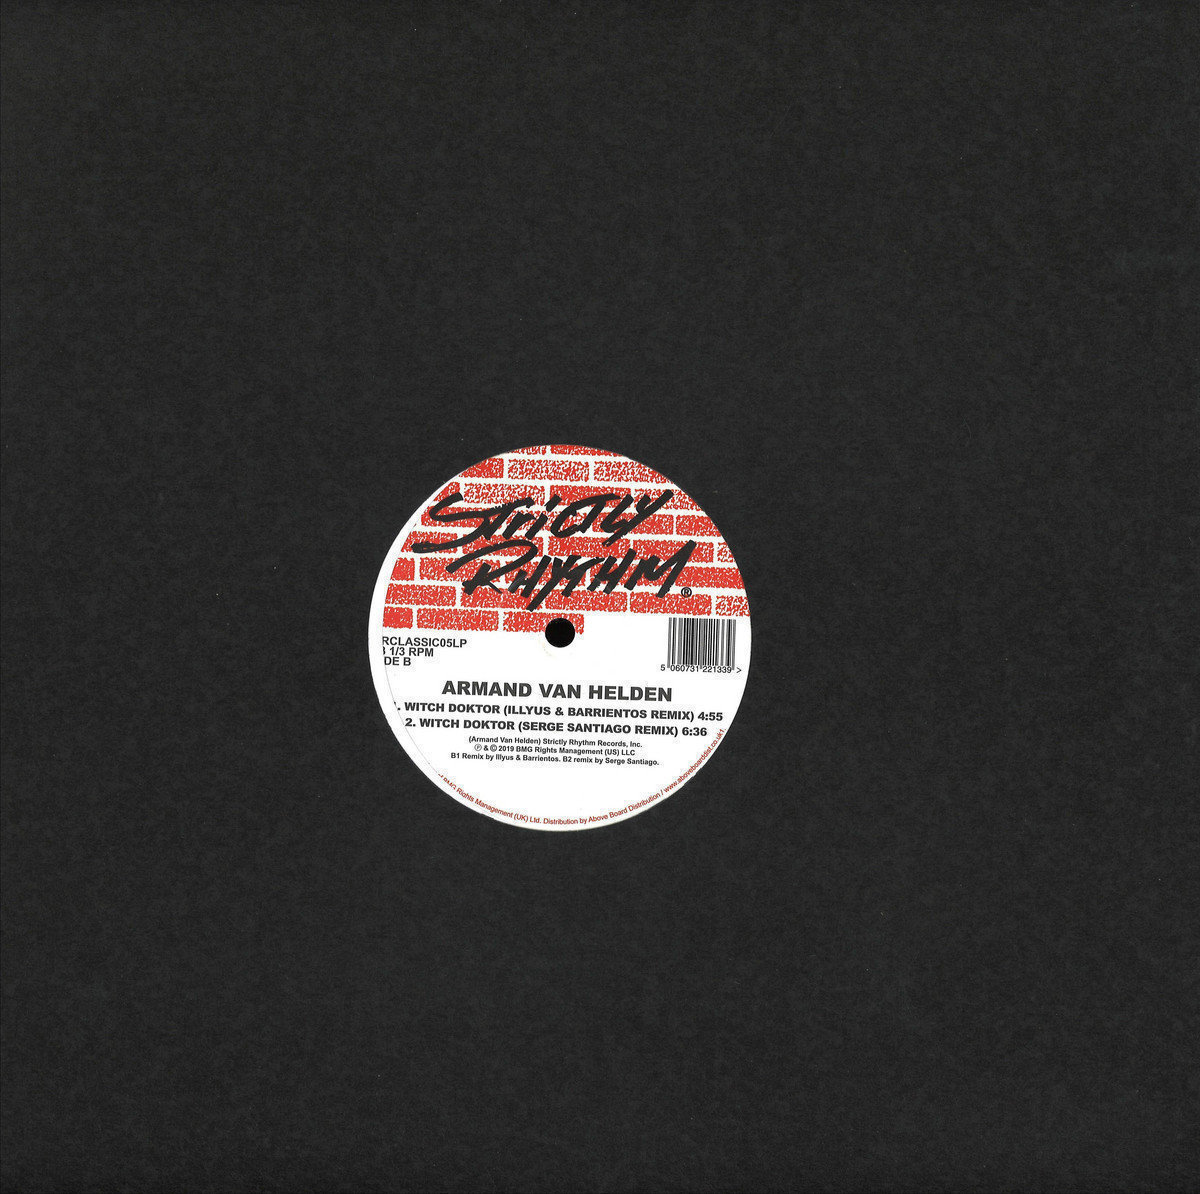 Disque vinyle Armand van Helden - Witch Doktor Remixes (LP)